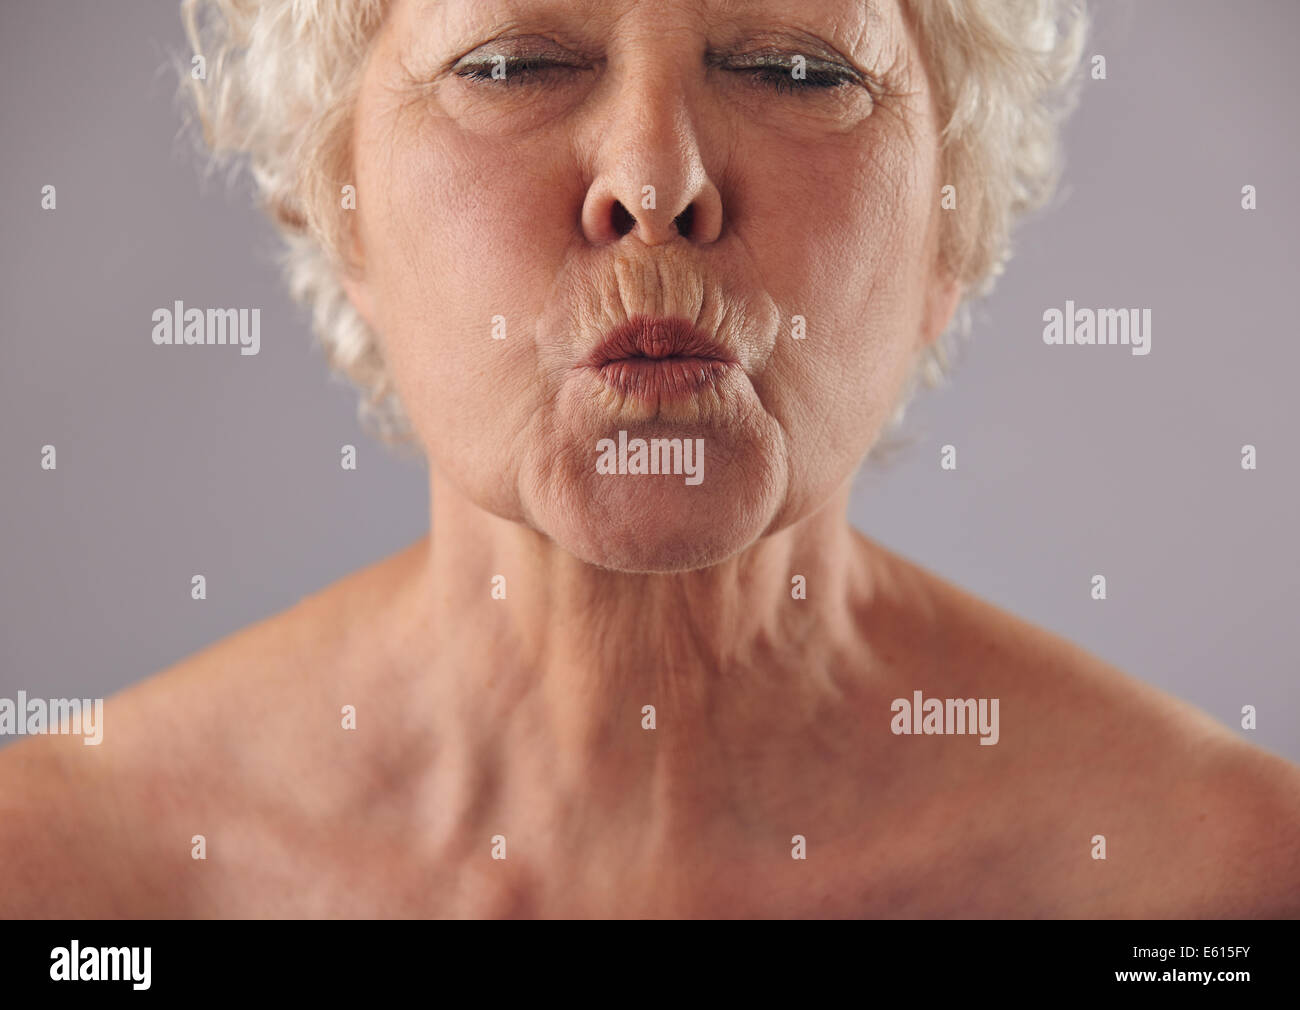 Cropped portrait of senior woman puckering lips. Femelle adulte grimaçant contre l'arrière-plan gris Banque D'Images